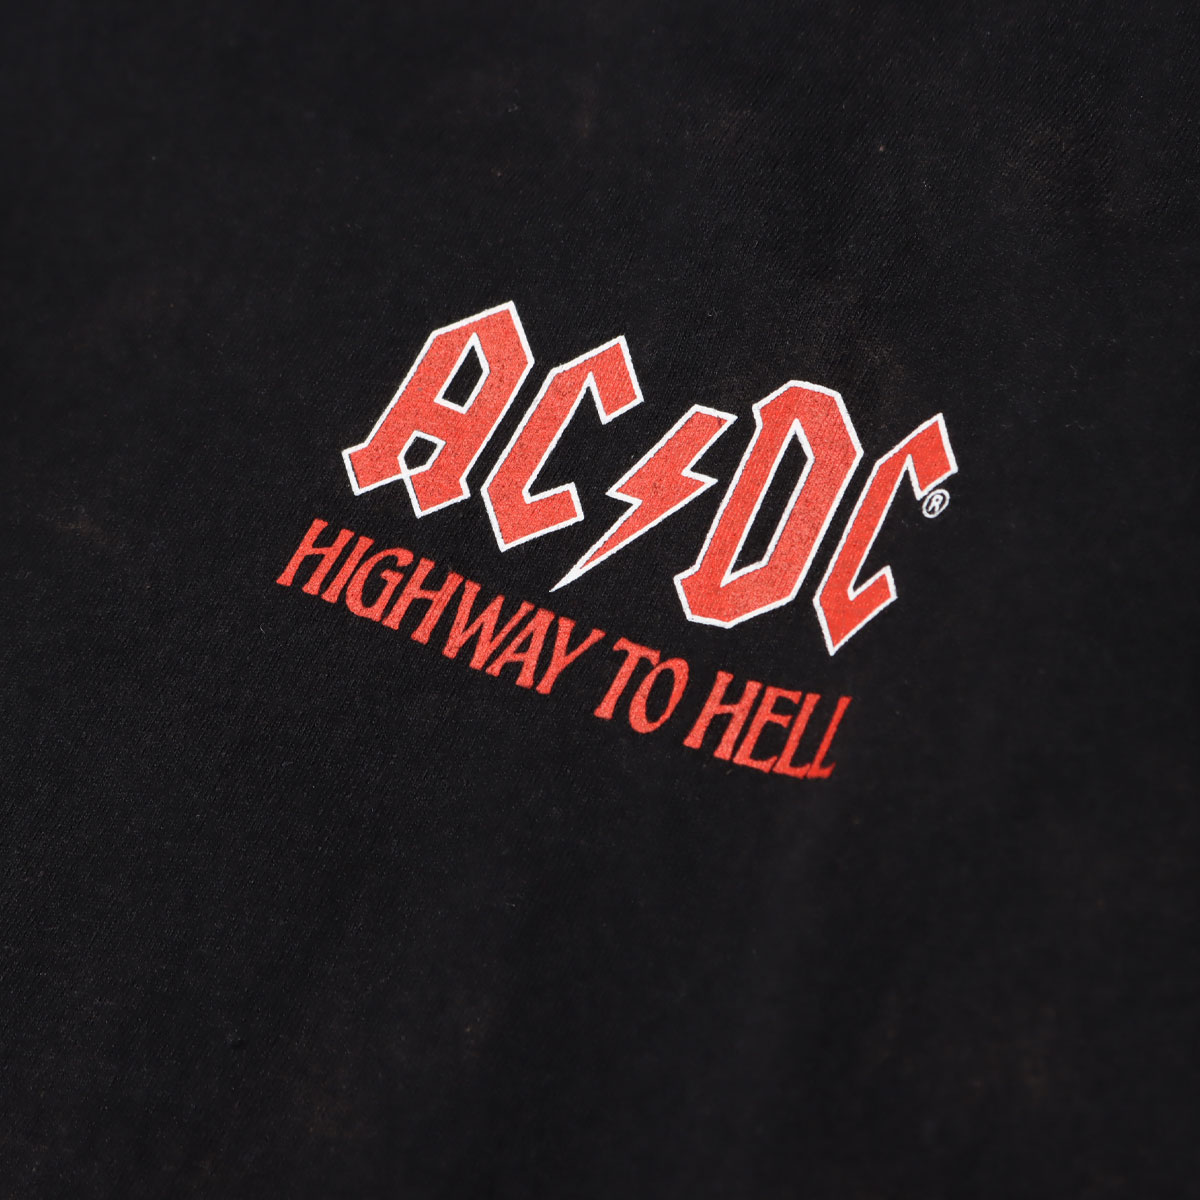 楽天市場 Dc Shoes Ac Dc Highway To Hell Ls ディーシーシューズ Acdc ハイウェイ トゥ ヘル Ls Black メンズ 長袖tシャツ fw I Atmos Tokyo